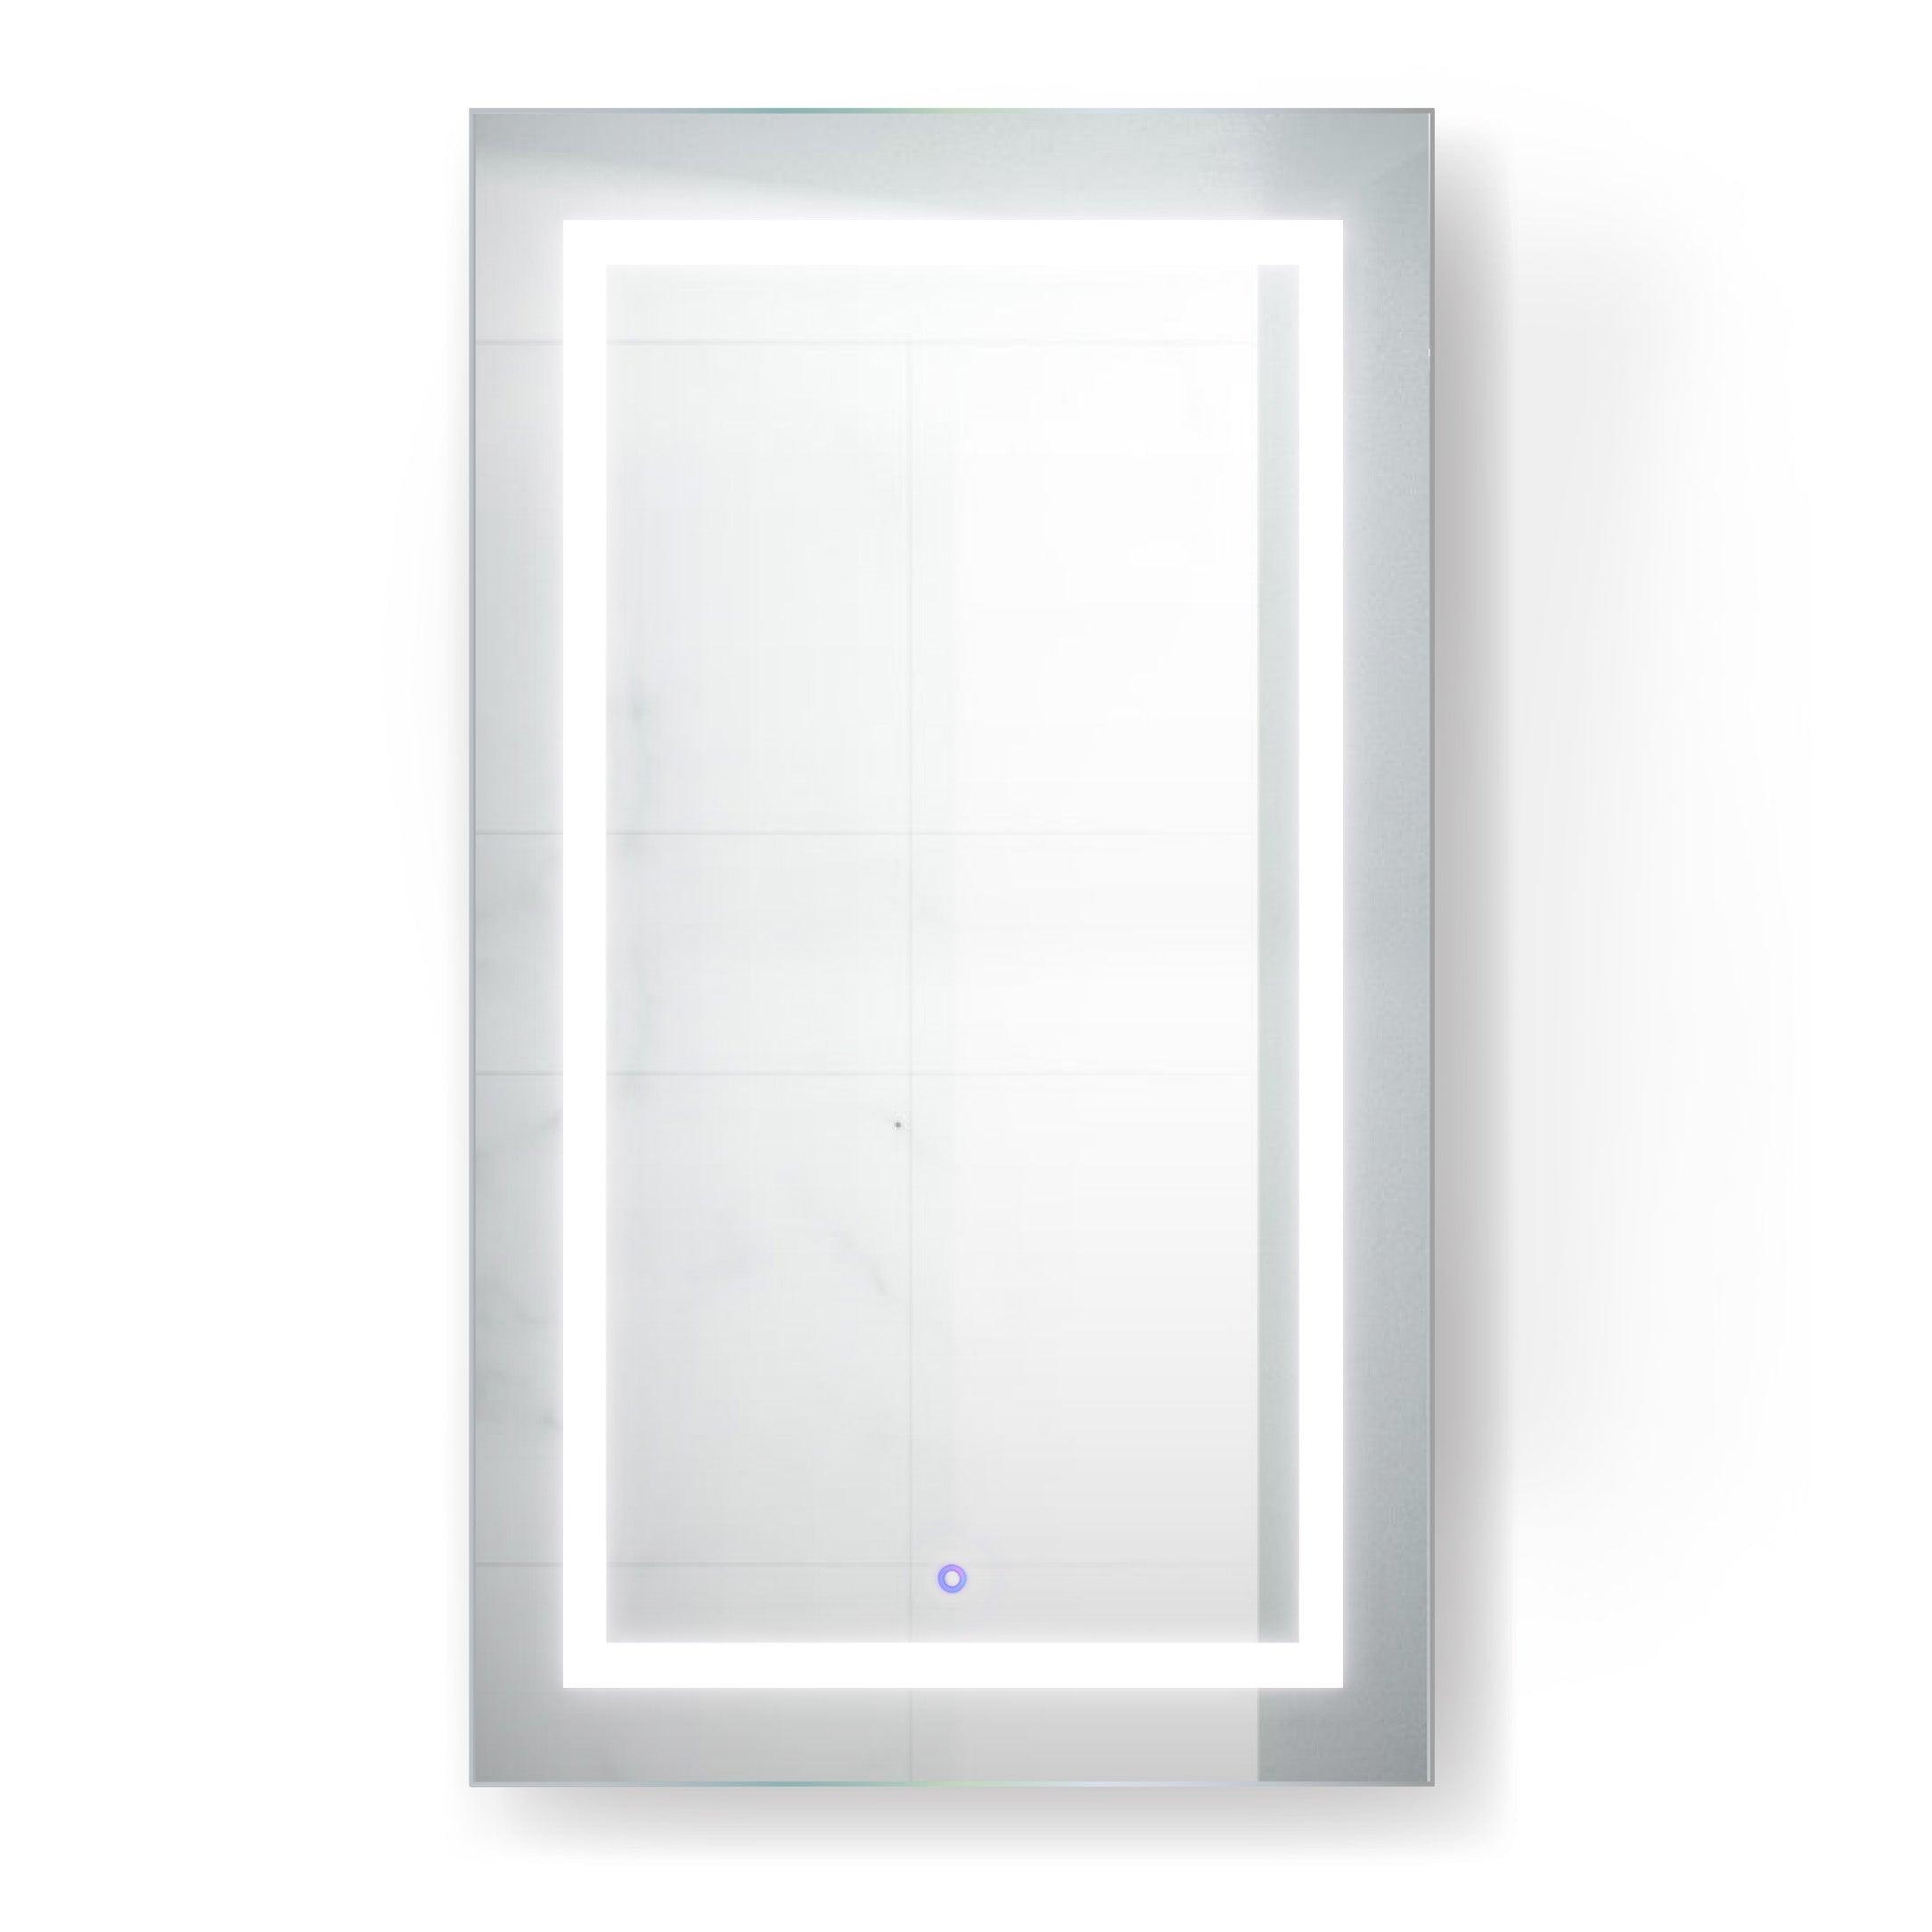 Krugg Svange 24″ X 42″ LED Medicine Cabinet w/Dimmer & Defogger